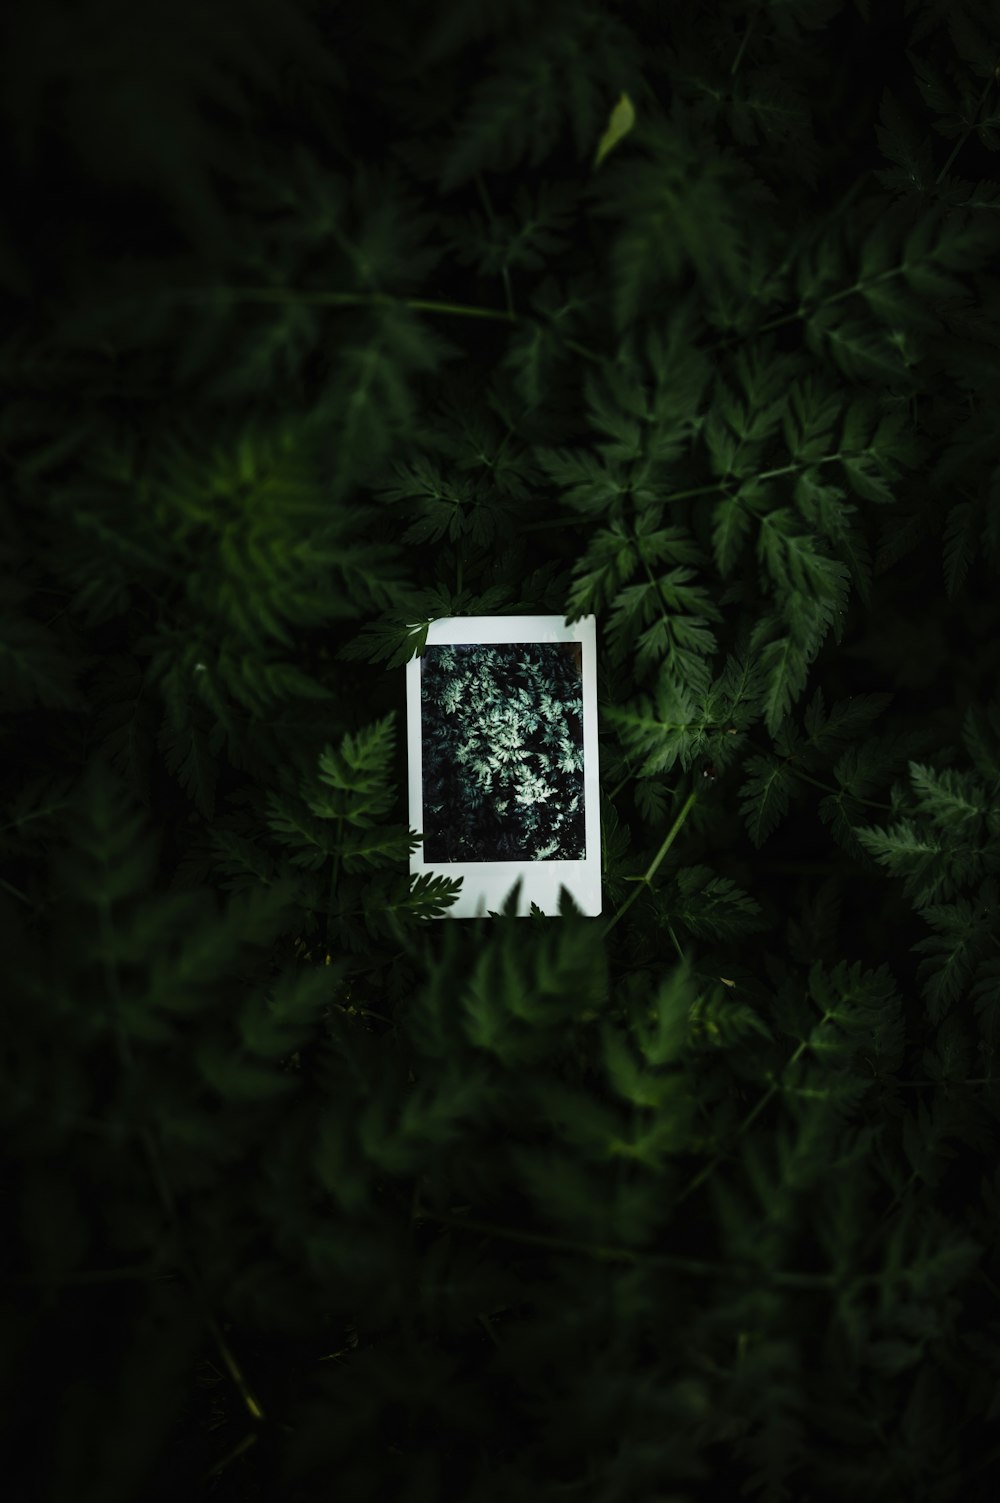 uma imagem polaroid de uma planta no meio de uma floresta